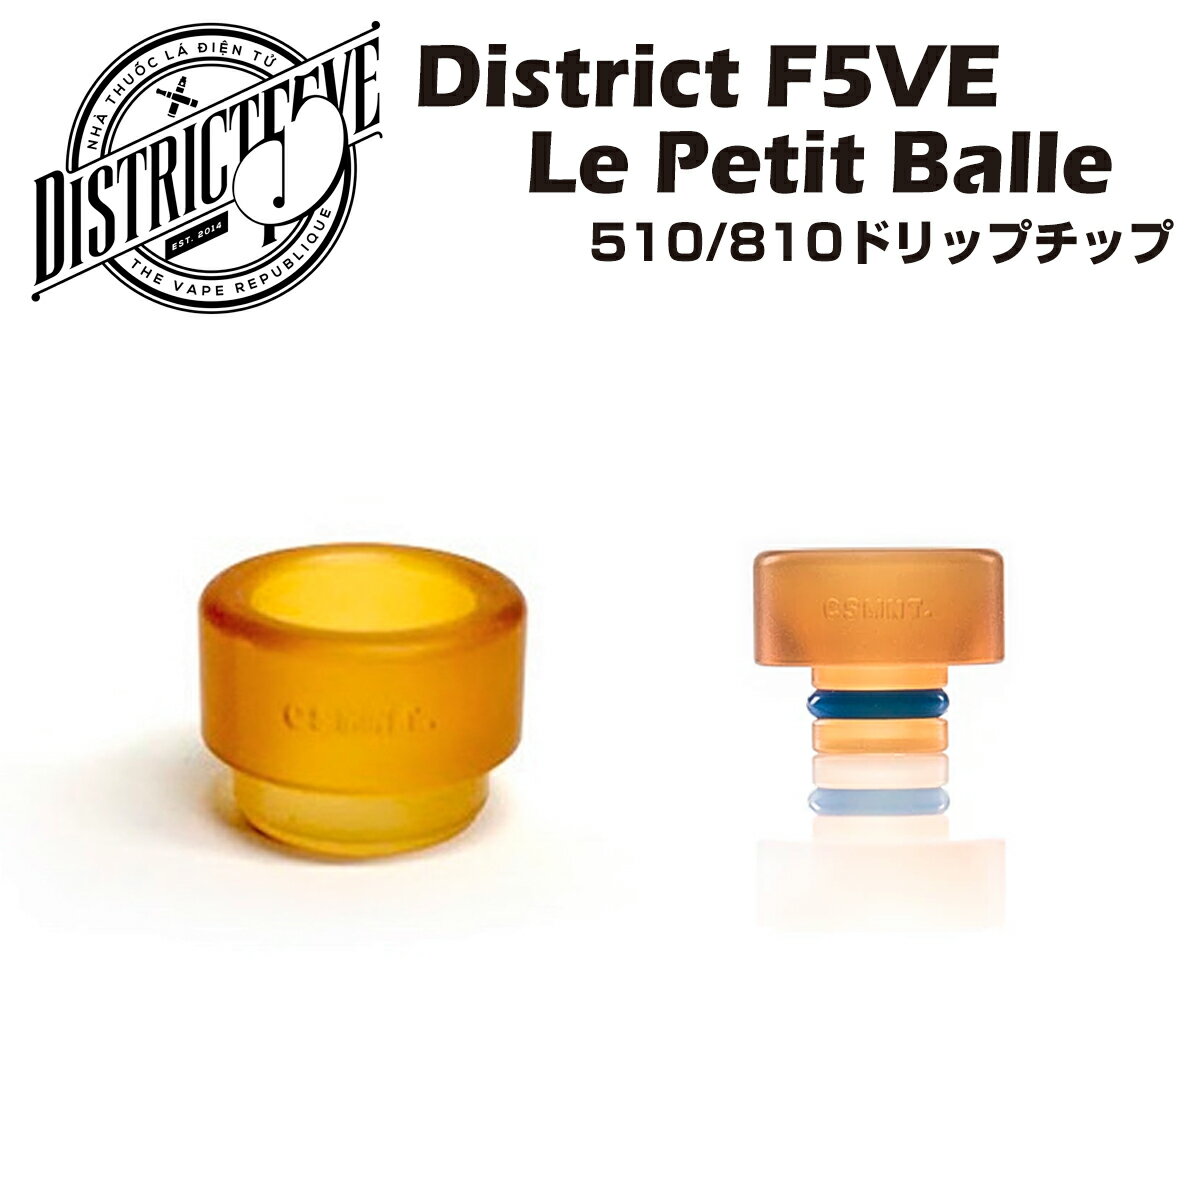 【送料無料】 District F5VE / Le Petit Balle Drip Tip ドリッ ...